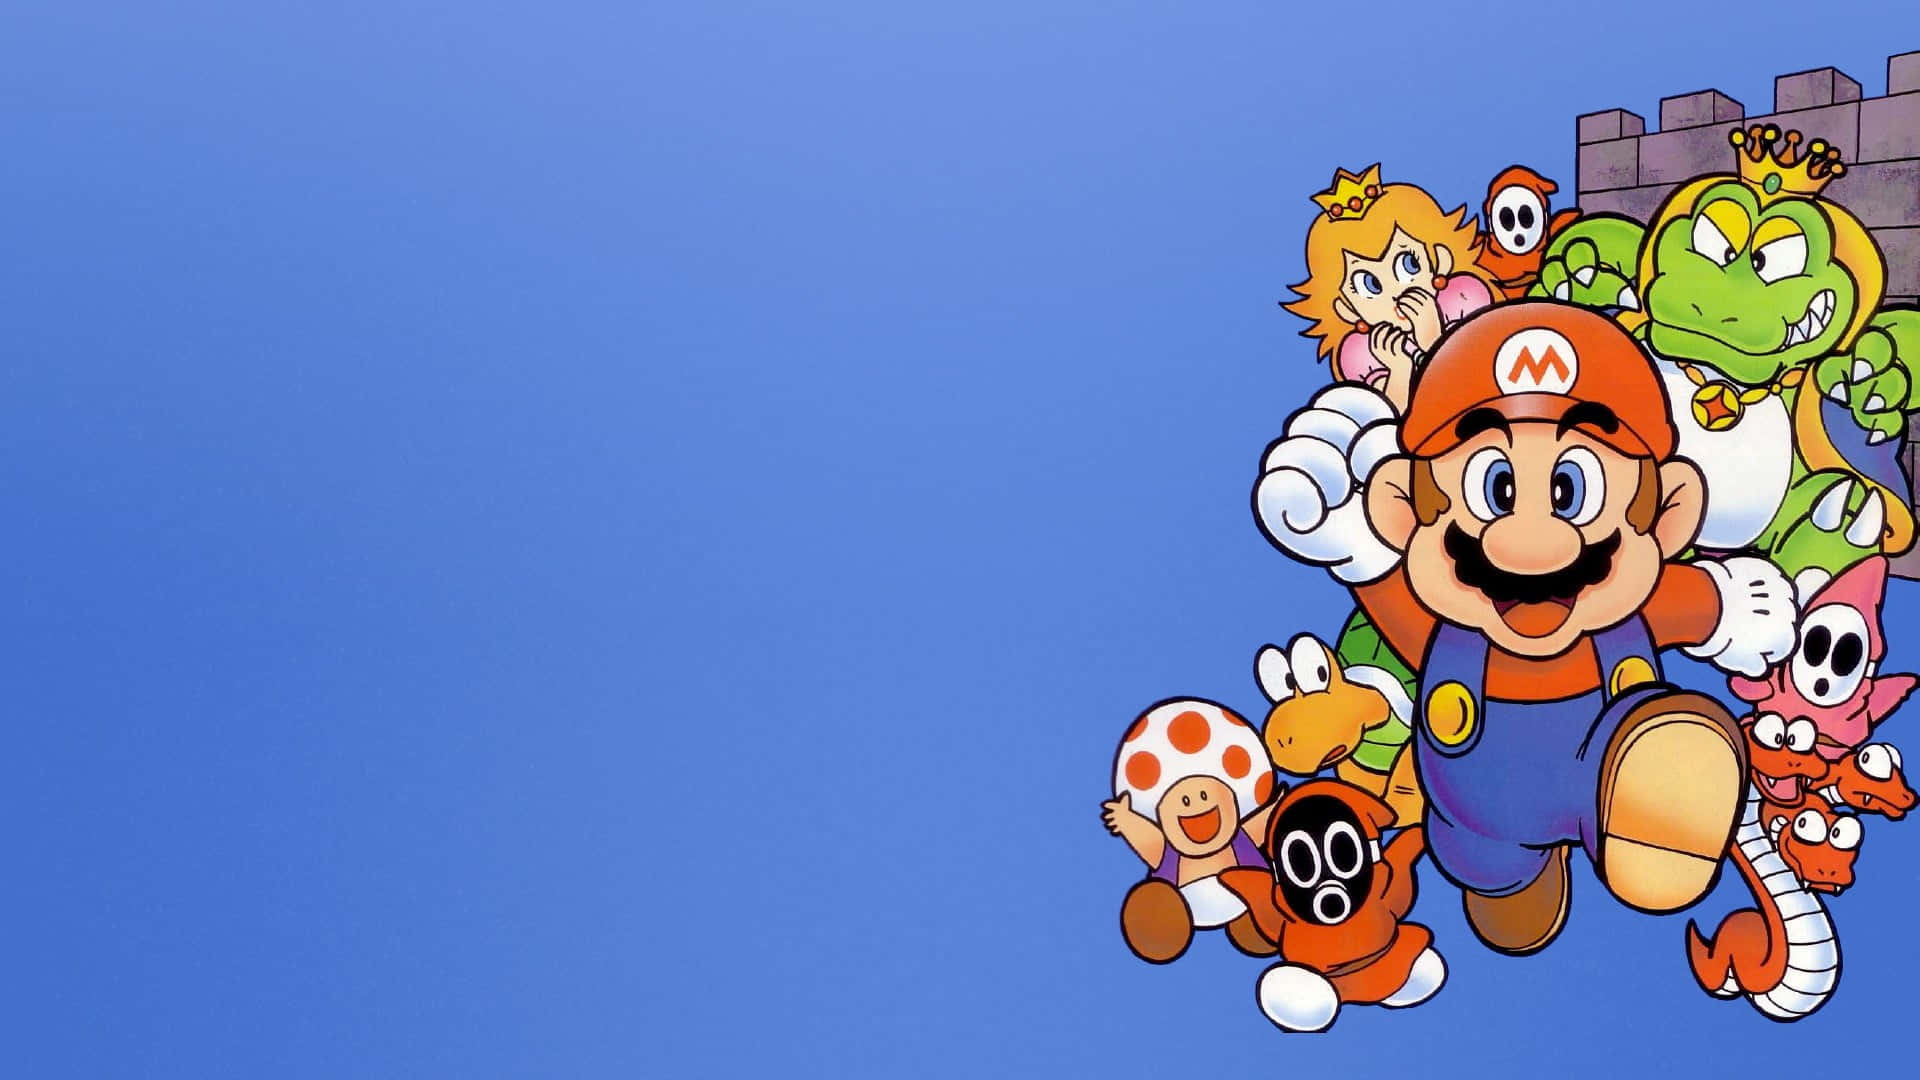 Super Mario Characters Assemble Wallpaper